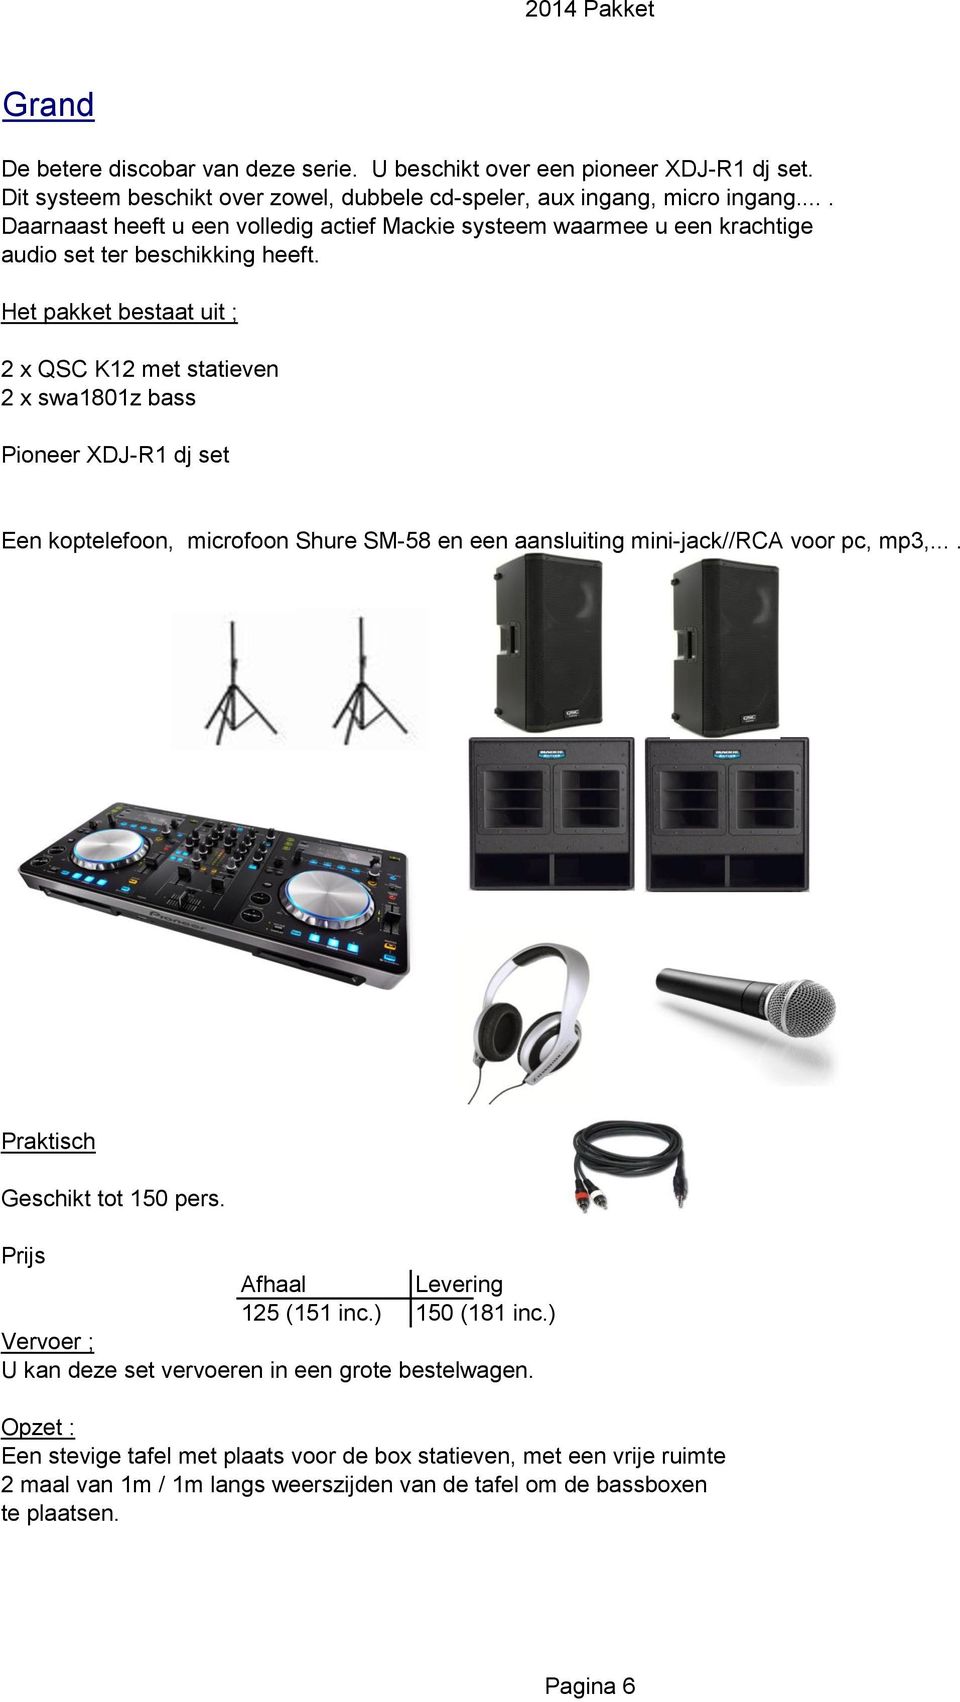 Het pakket bestaat uit ; 2 x QSC K12 met statieven 2 x swa1801z bass Pioneer XDJ-R1 dj set Een koptelefoon, microfoon Shure SM-58 en een aansluiting mini-jack//rca voor pc, mp3,.